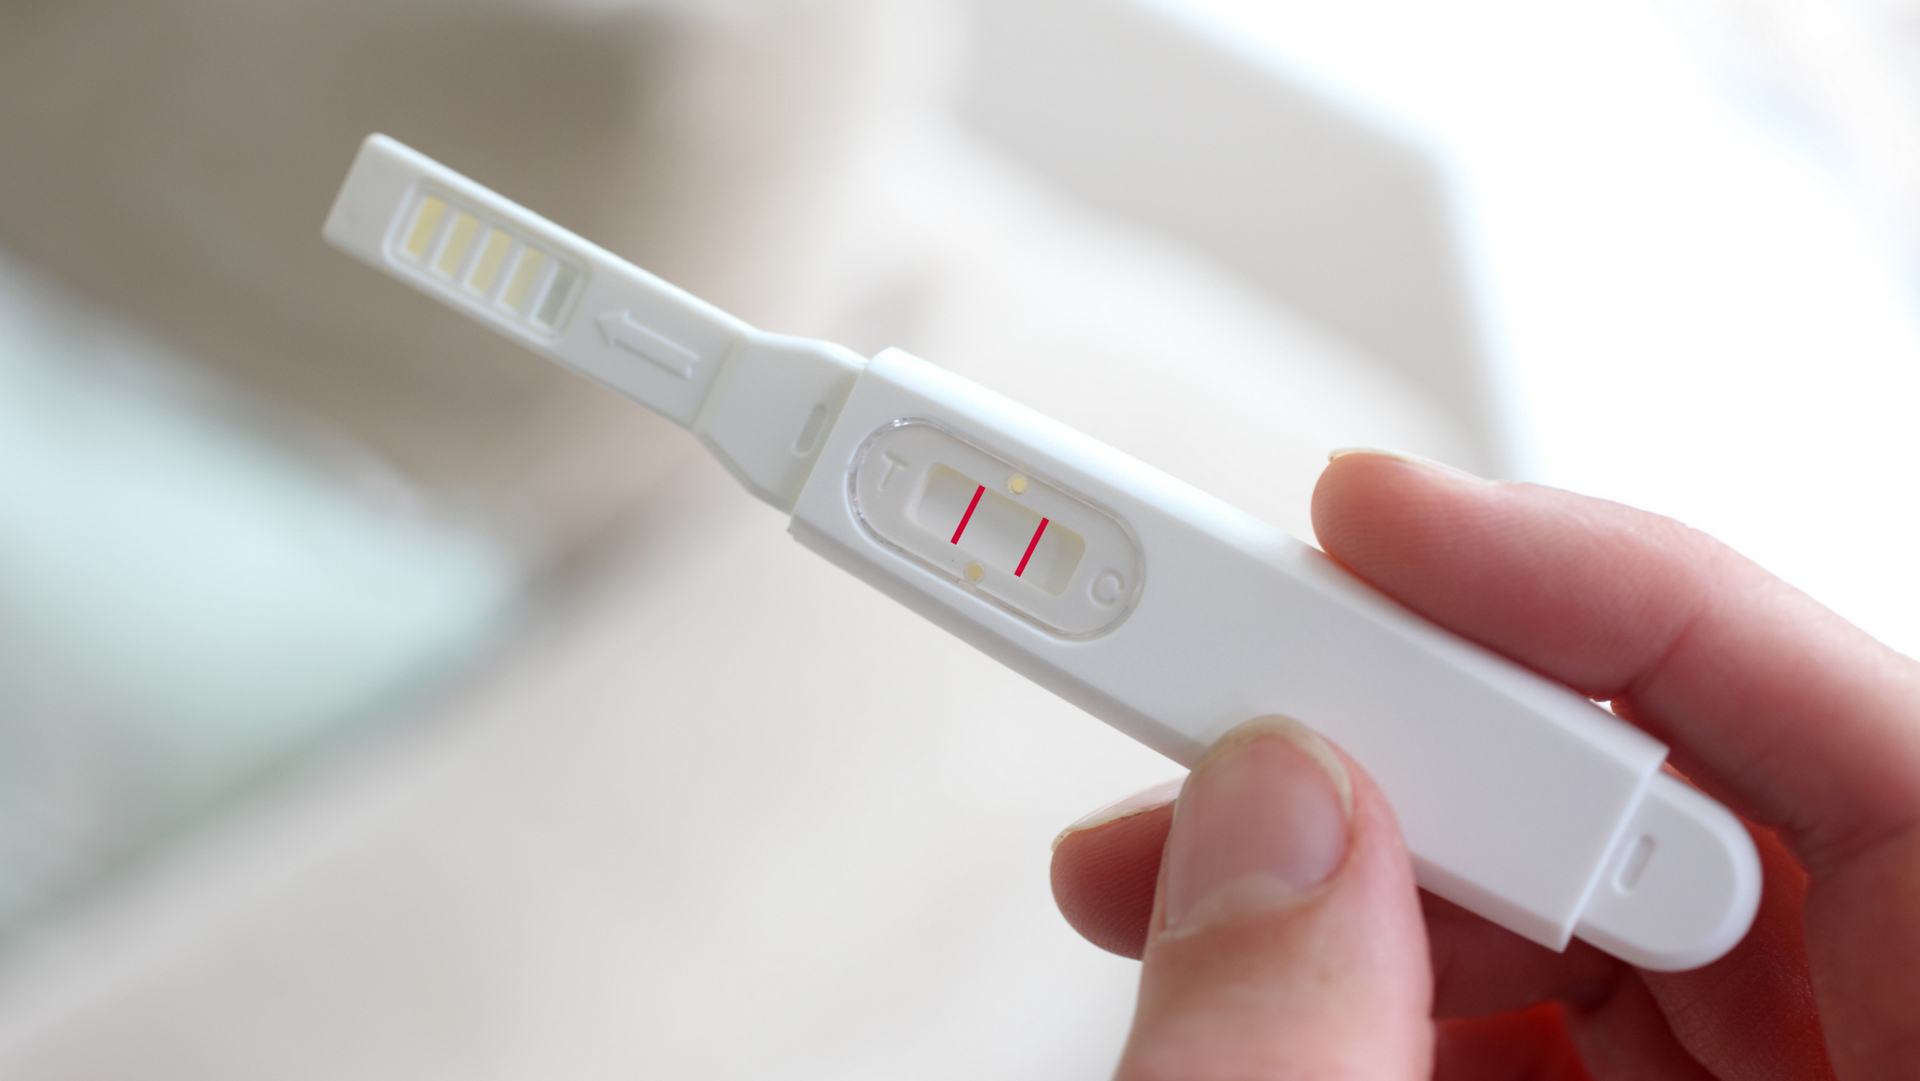 test na beremennost2. на какой день цикла проверить тест на беременность. 